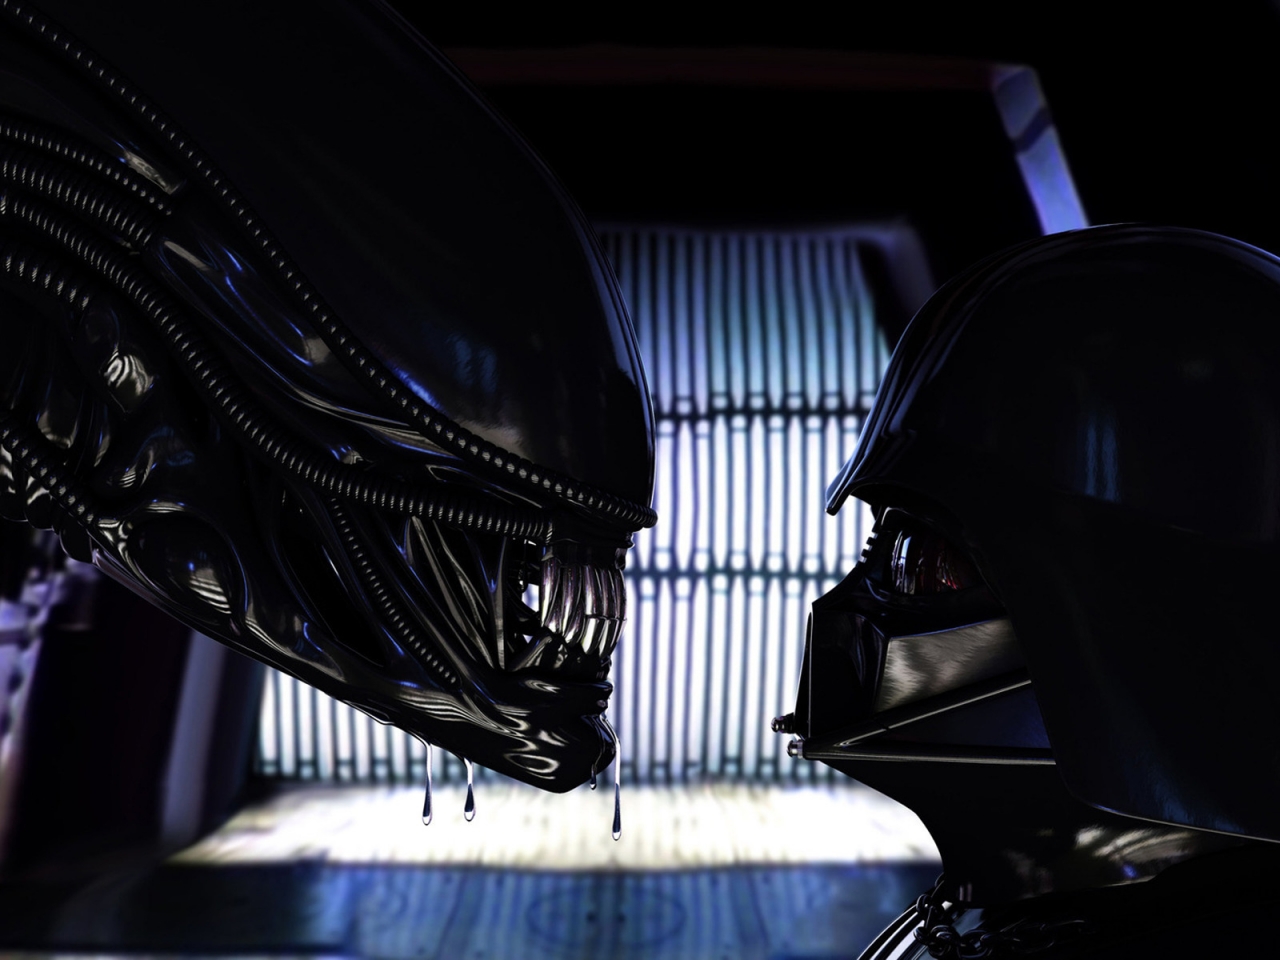 Alien vs Darth Vader for 1280 x 960 resolution